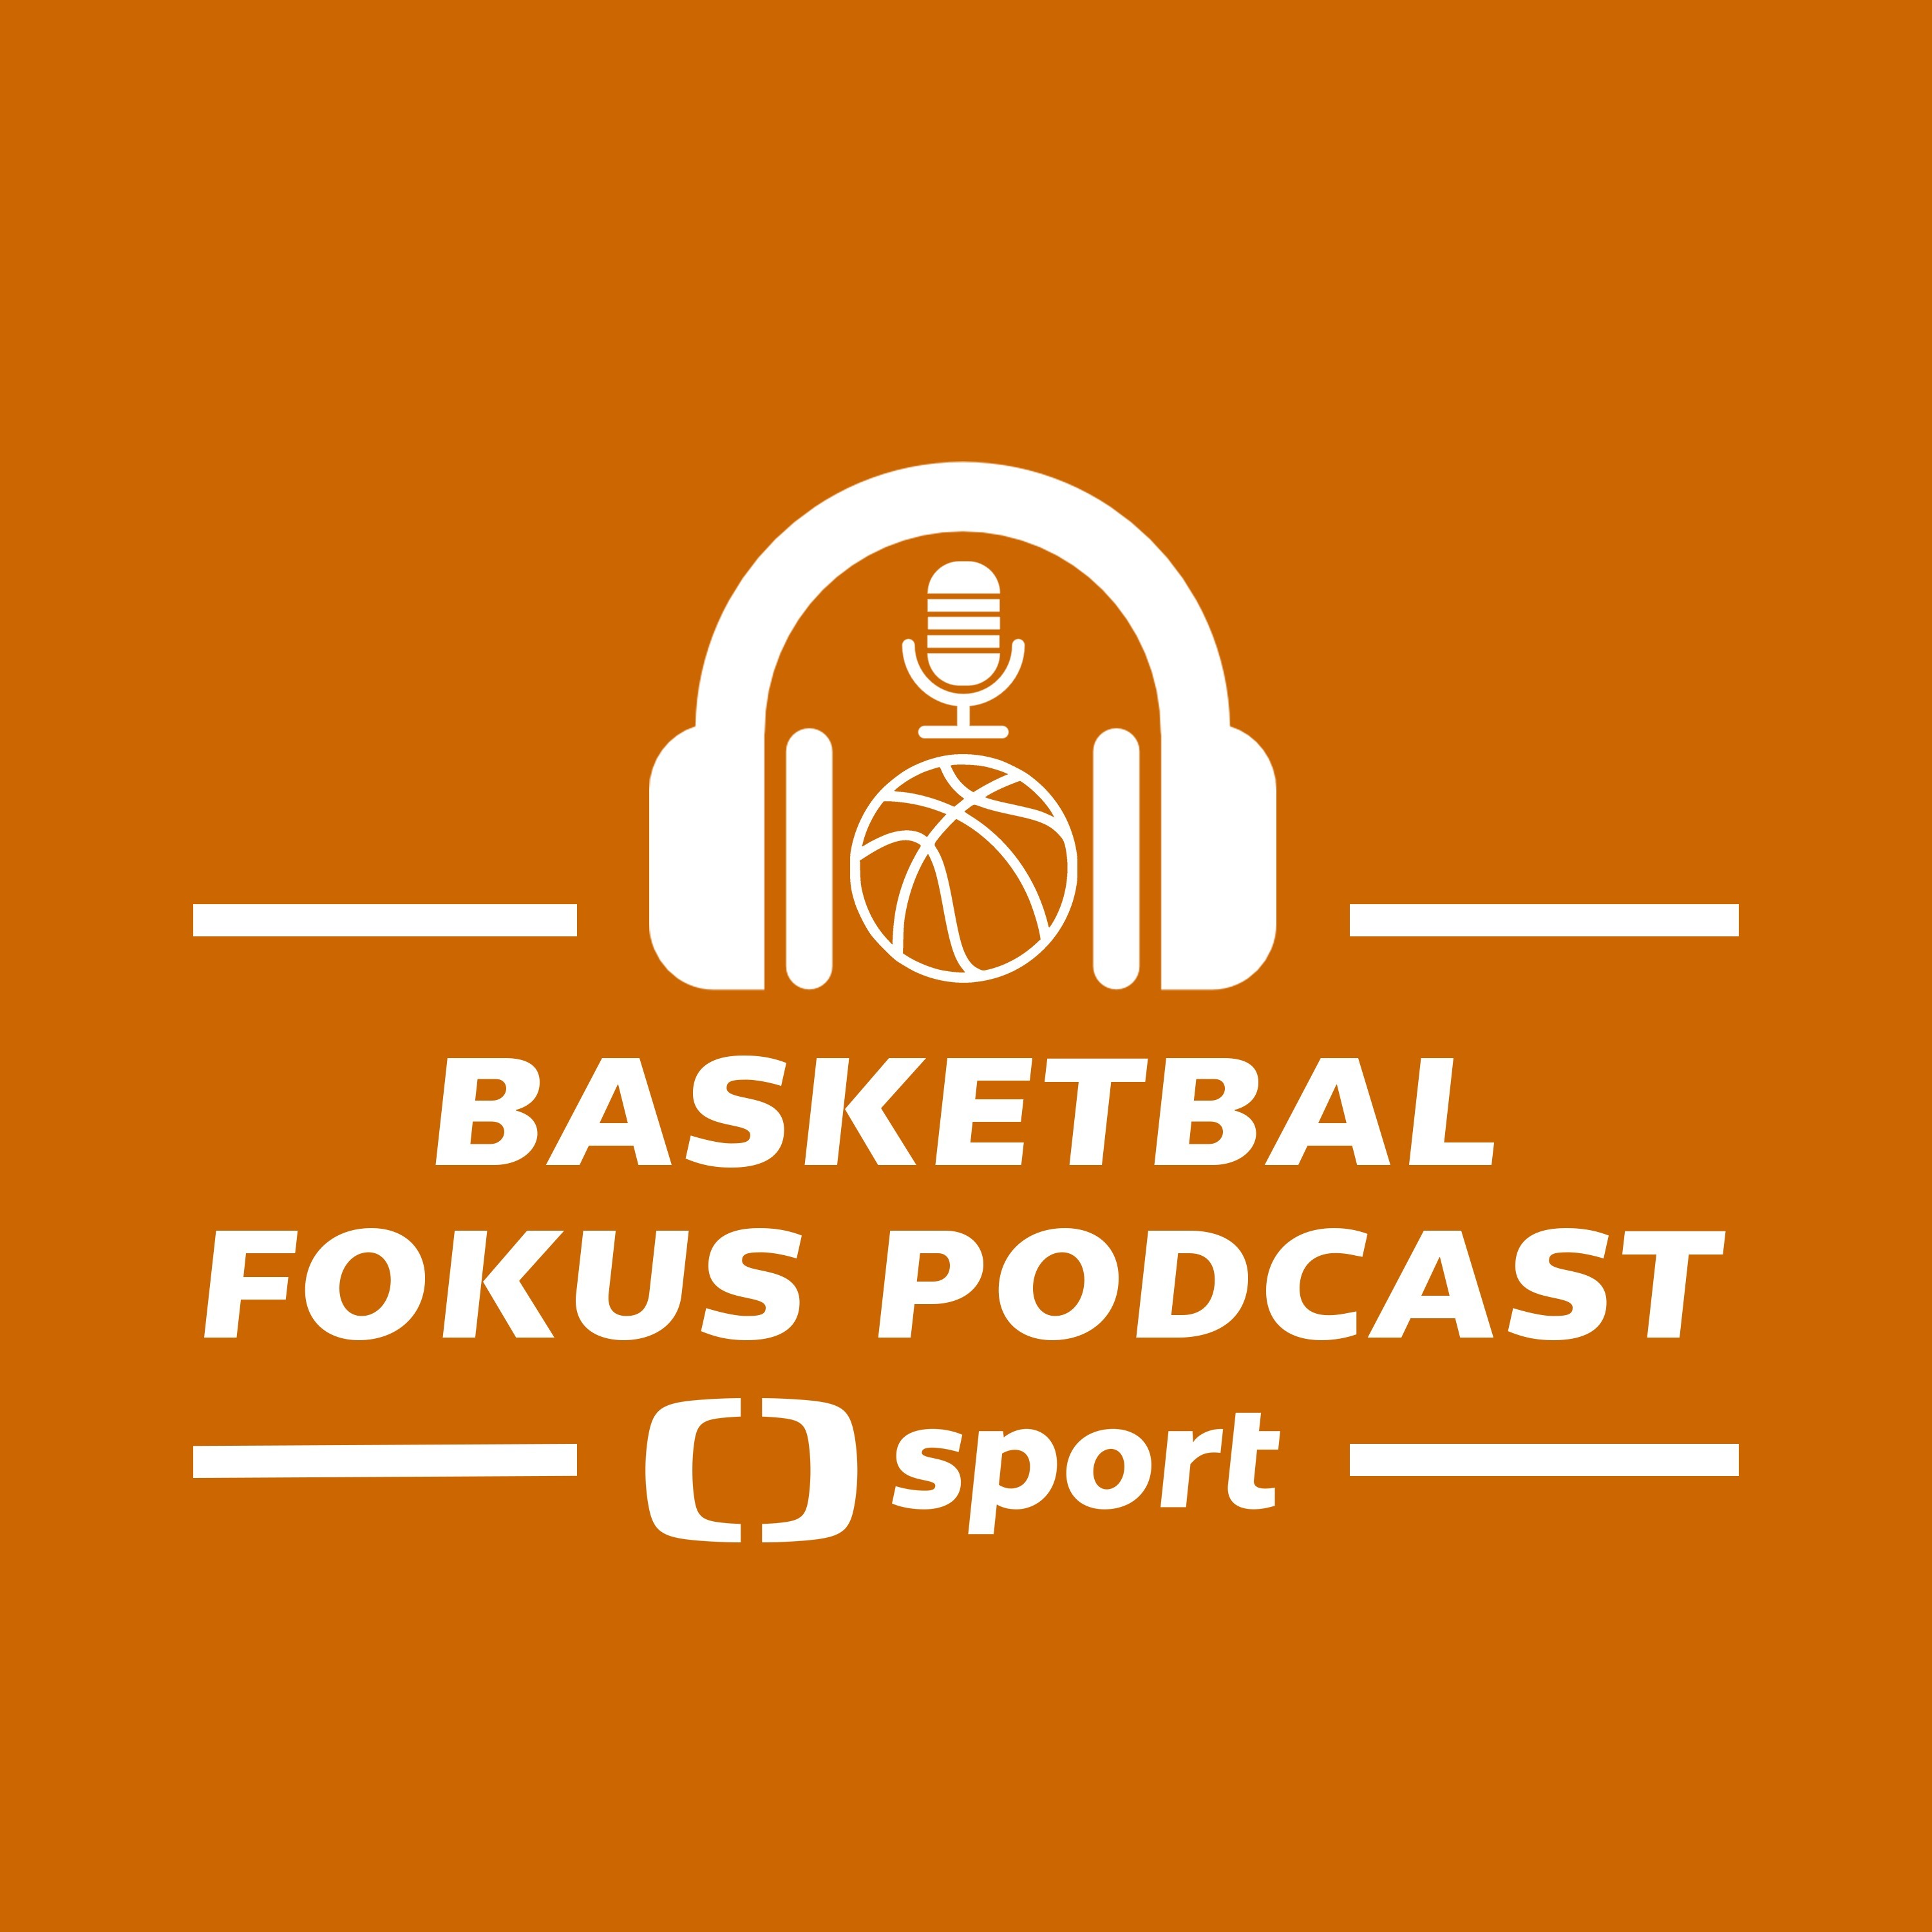 Basketbal fokus podcast: Jaký je (nejen) sportovní odkaz Kobeho Bryanta?